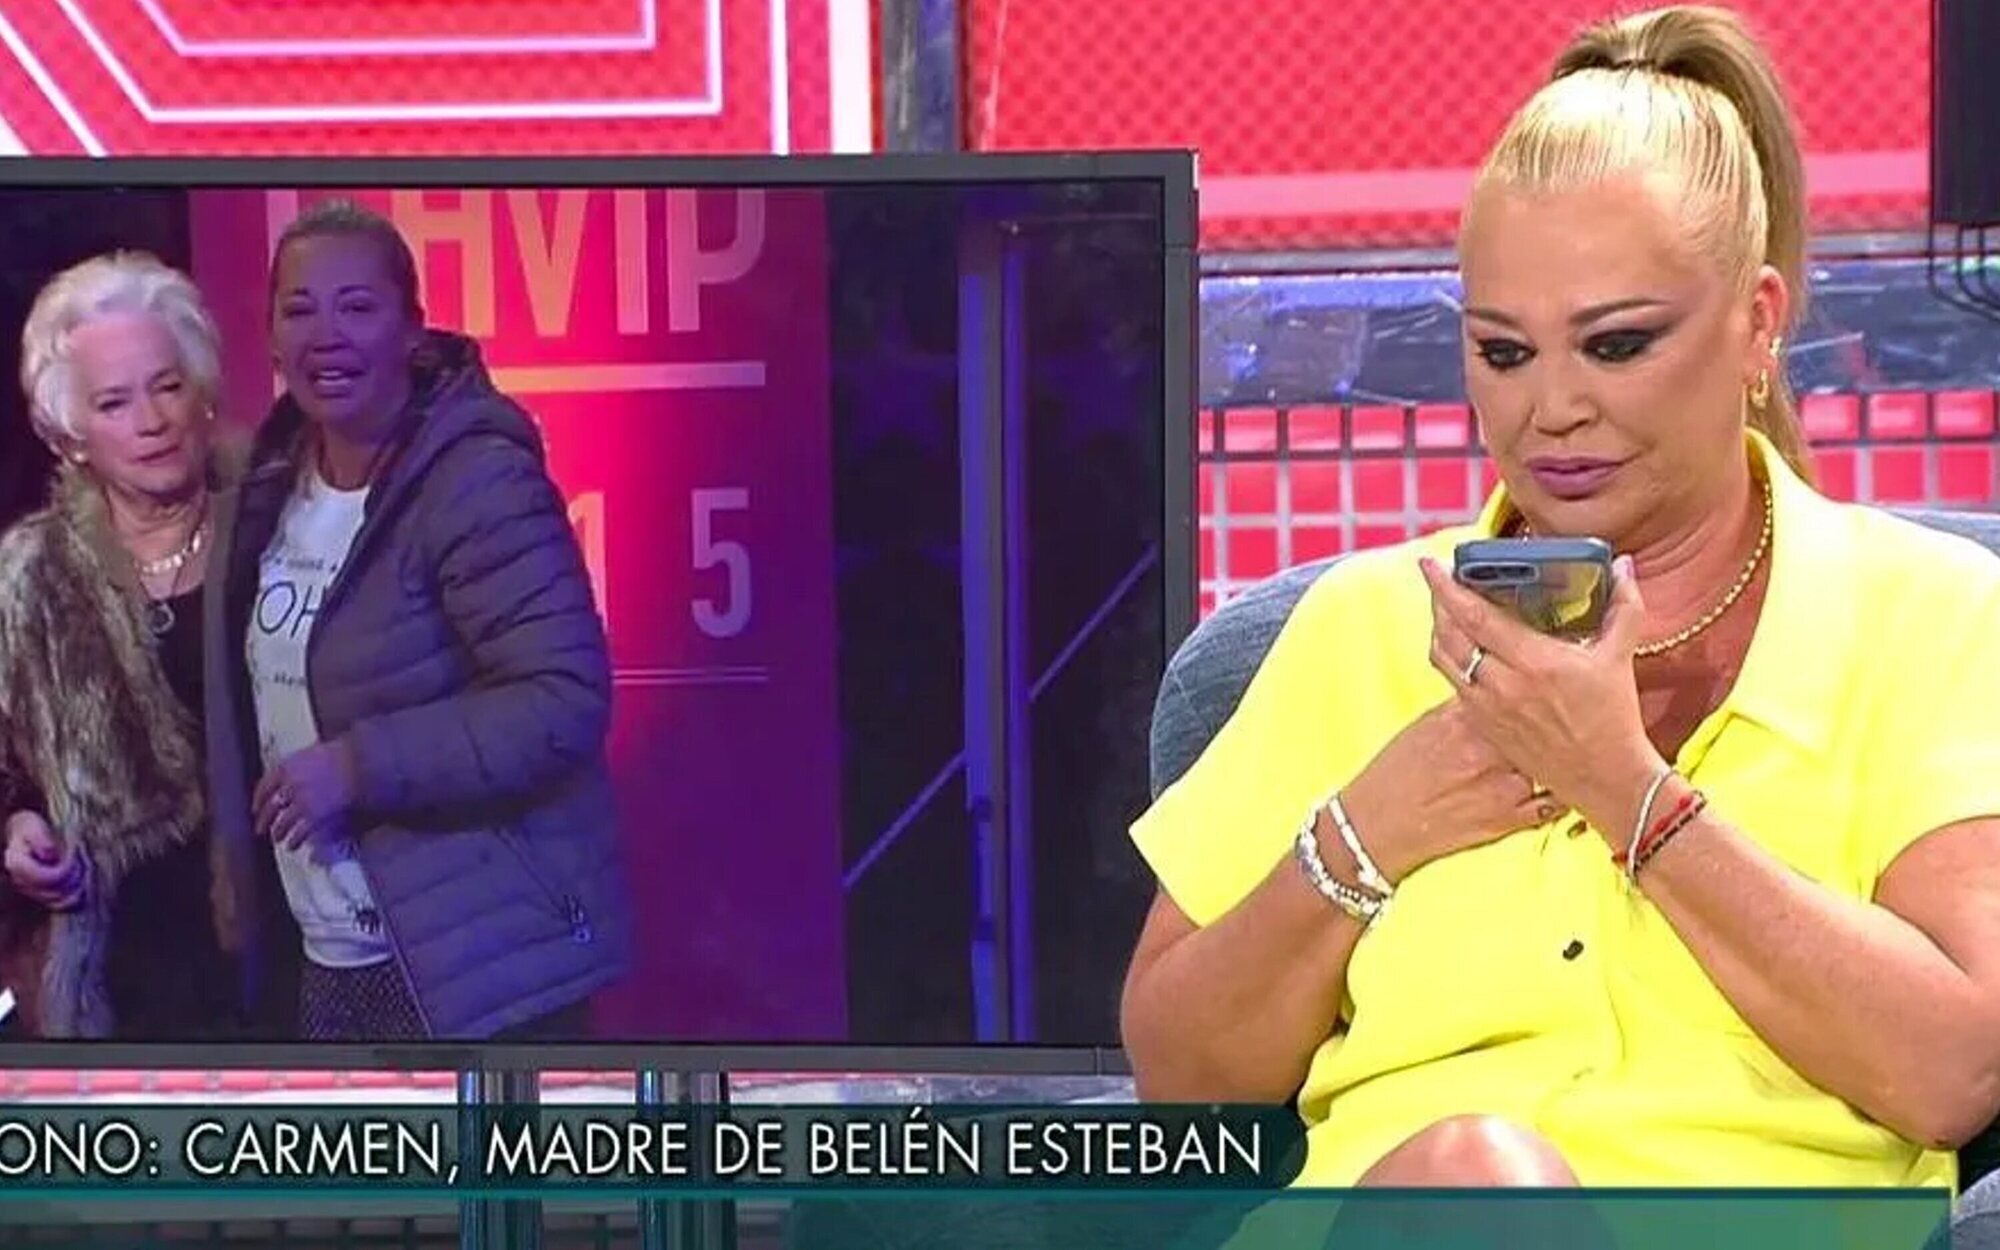 La madre de Belén Esteban, sobre las nuevas tardes de Telecinco: "Cinco horas viendo tonterías y gilipolleces"